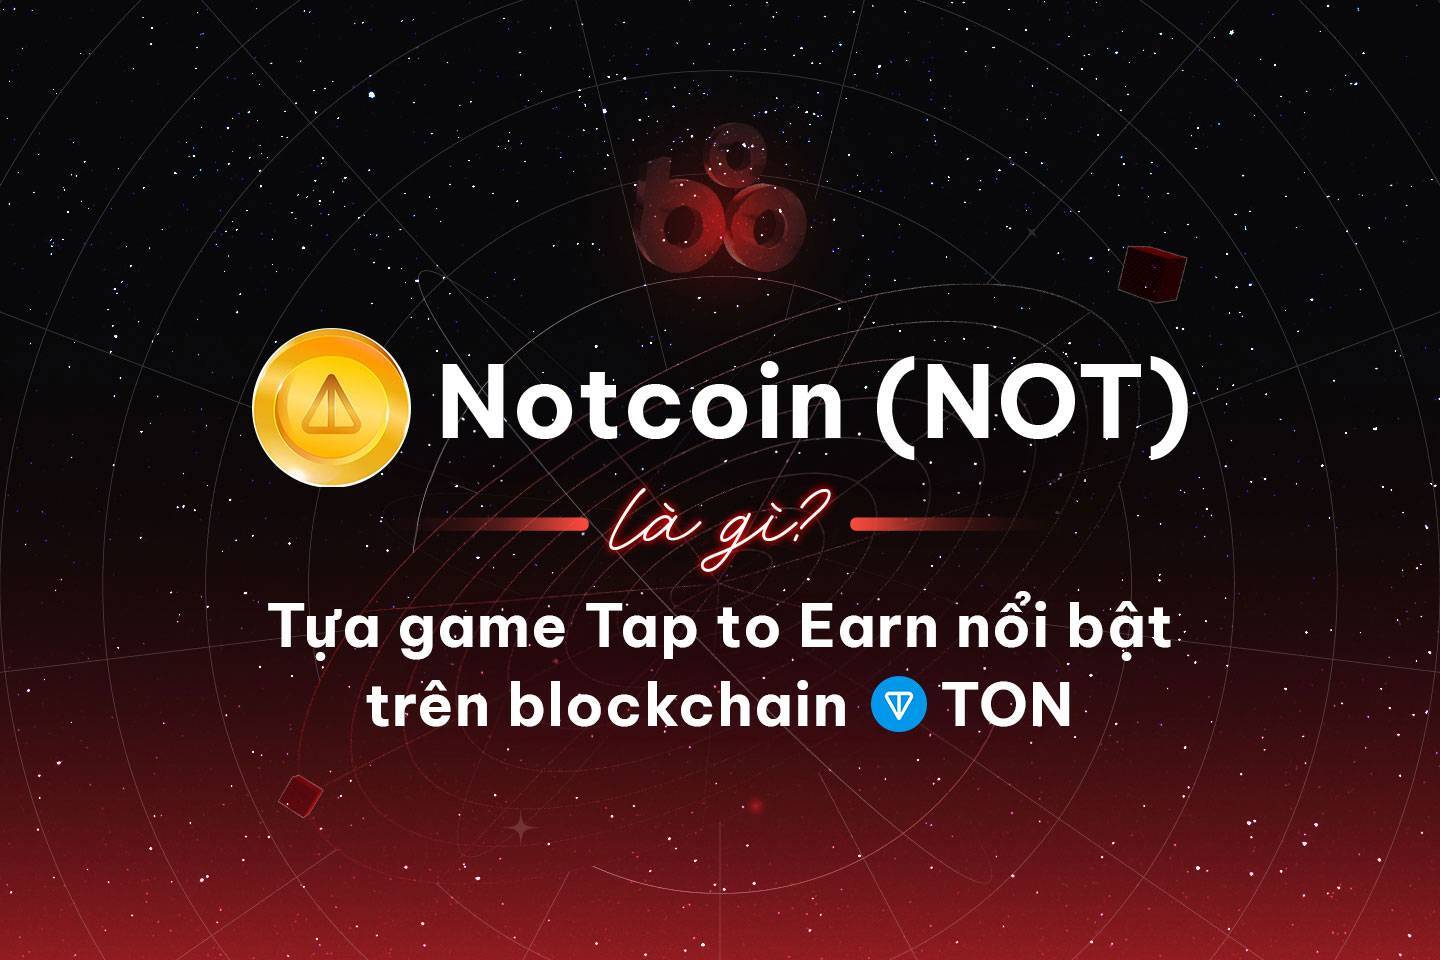 Notcoin not Là Gì Tựa Game Tap To Earn Nổi Bật Trên Blockchain Ton